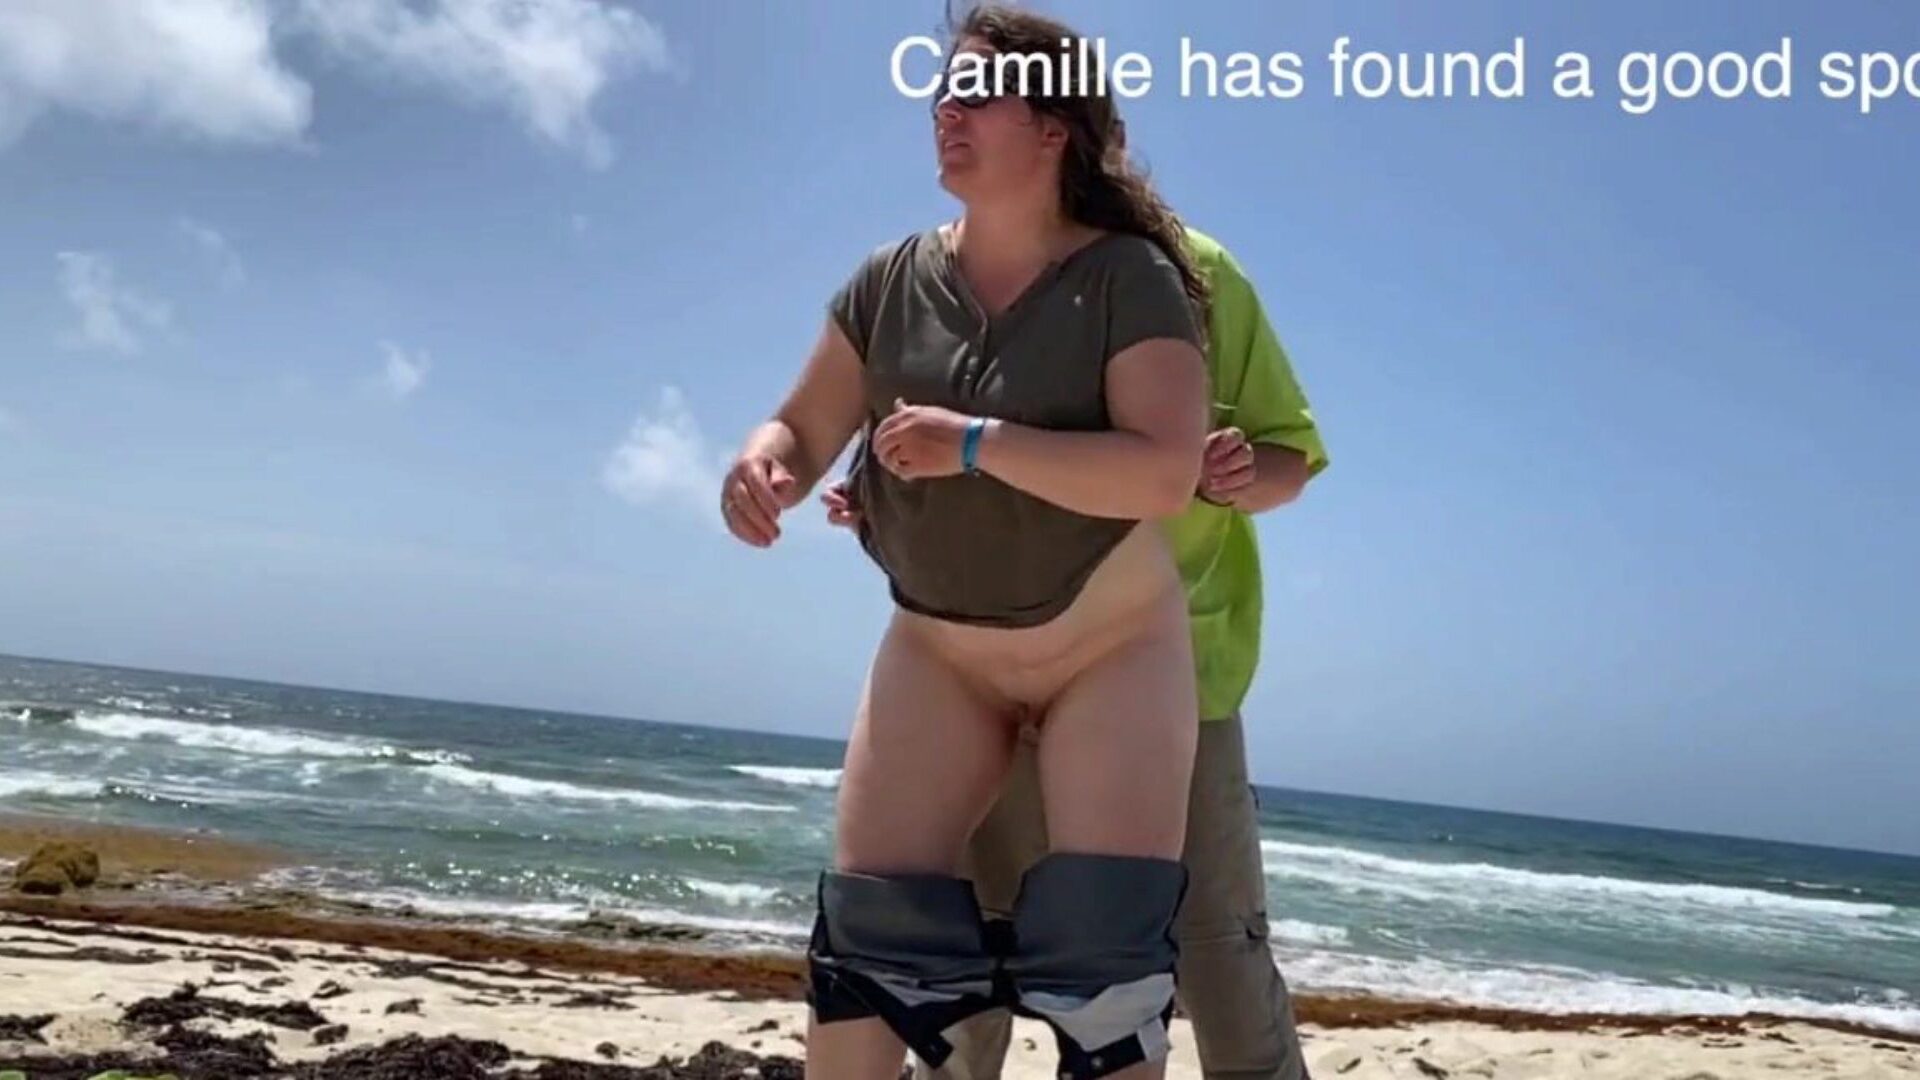 camille keek toe terwijl ze op het strand bult camille vond een kostbare plek met sommige mensen observeerden lawaaierig zijn zodat iedereen zal kijken